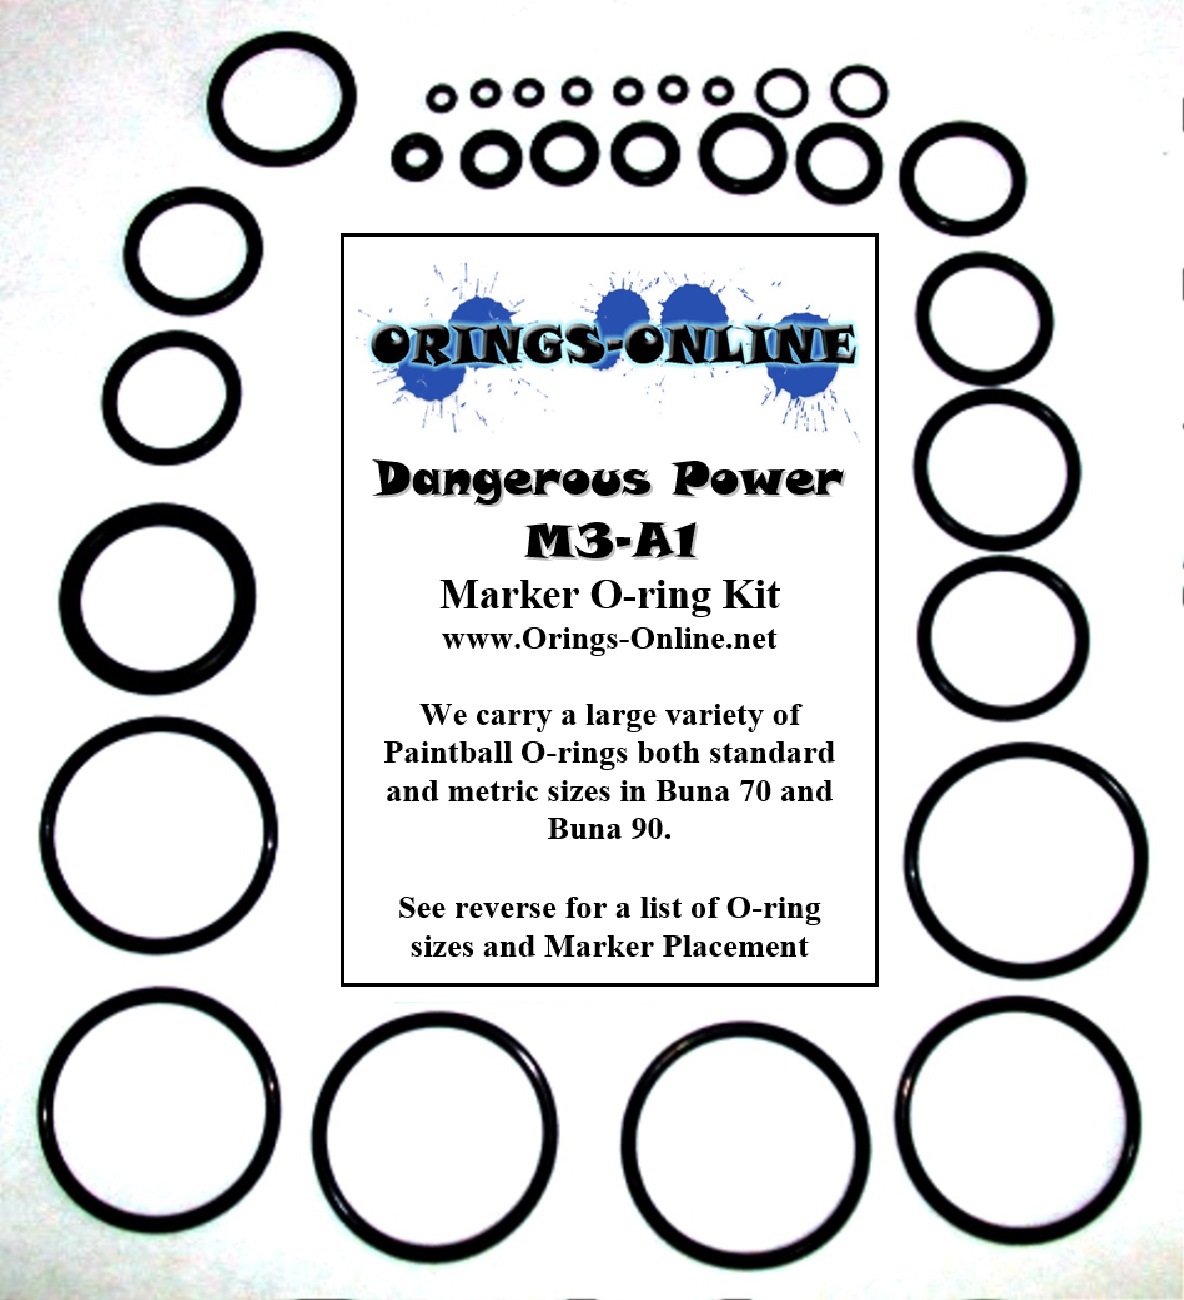 Dangerous Power M3-A1 Marker O-ring Kit